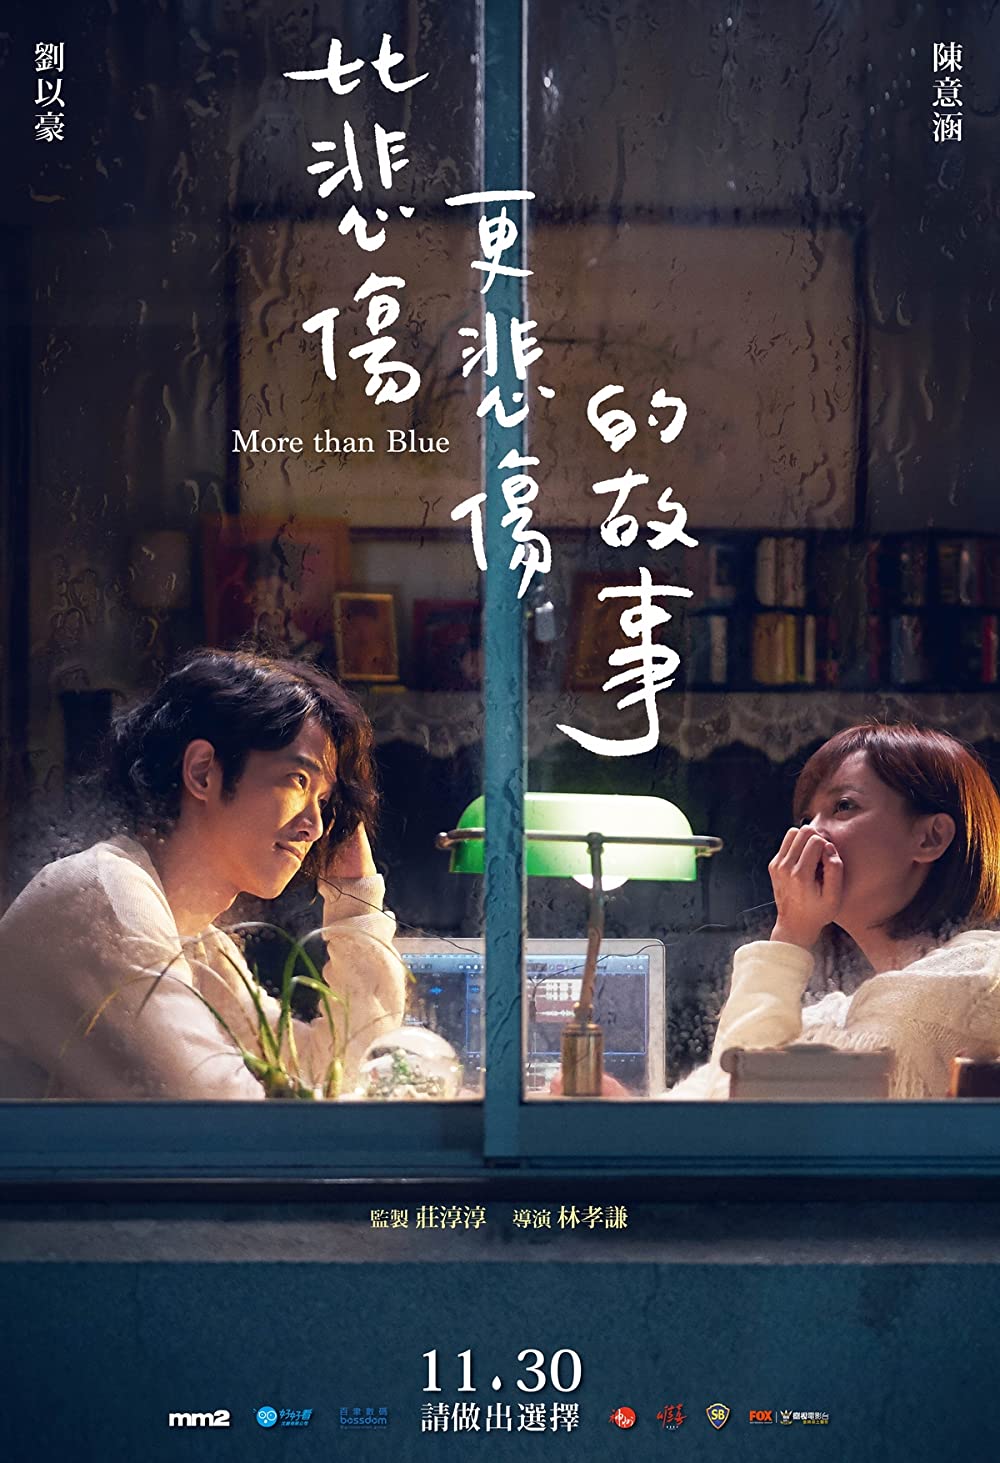 ดูหนังออนไลน์ฟรี More Than Blue (Bi bei shang geng bei shang de gu shi) ถึงวันนั้น ฉันจะบอกรักเธอ (2018)